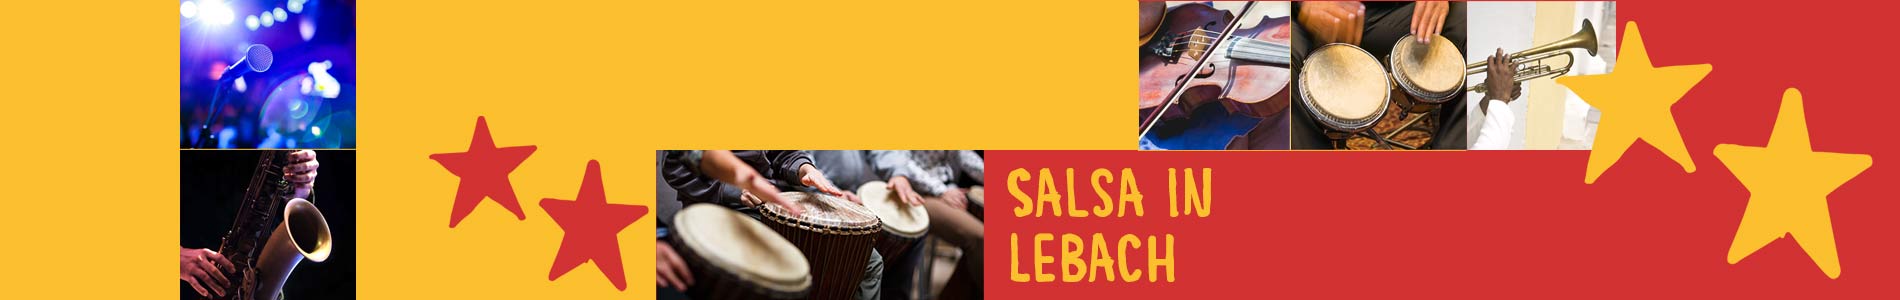 Salsa in Lebach – Salsa lernen und tanzen, Tanzkurse, Partys, Veranstaltungen